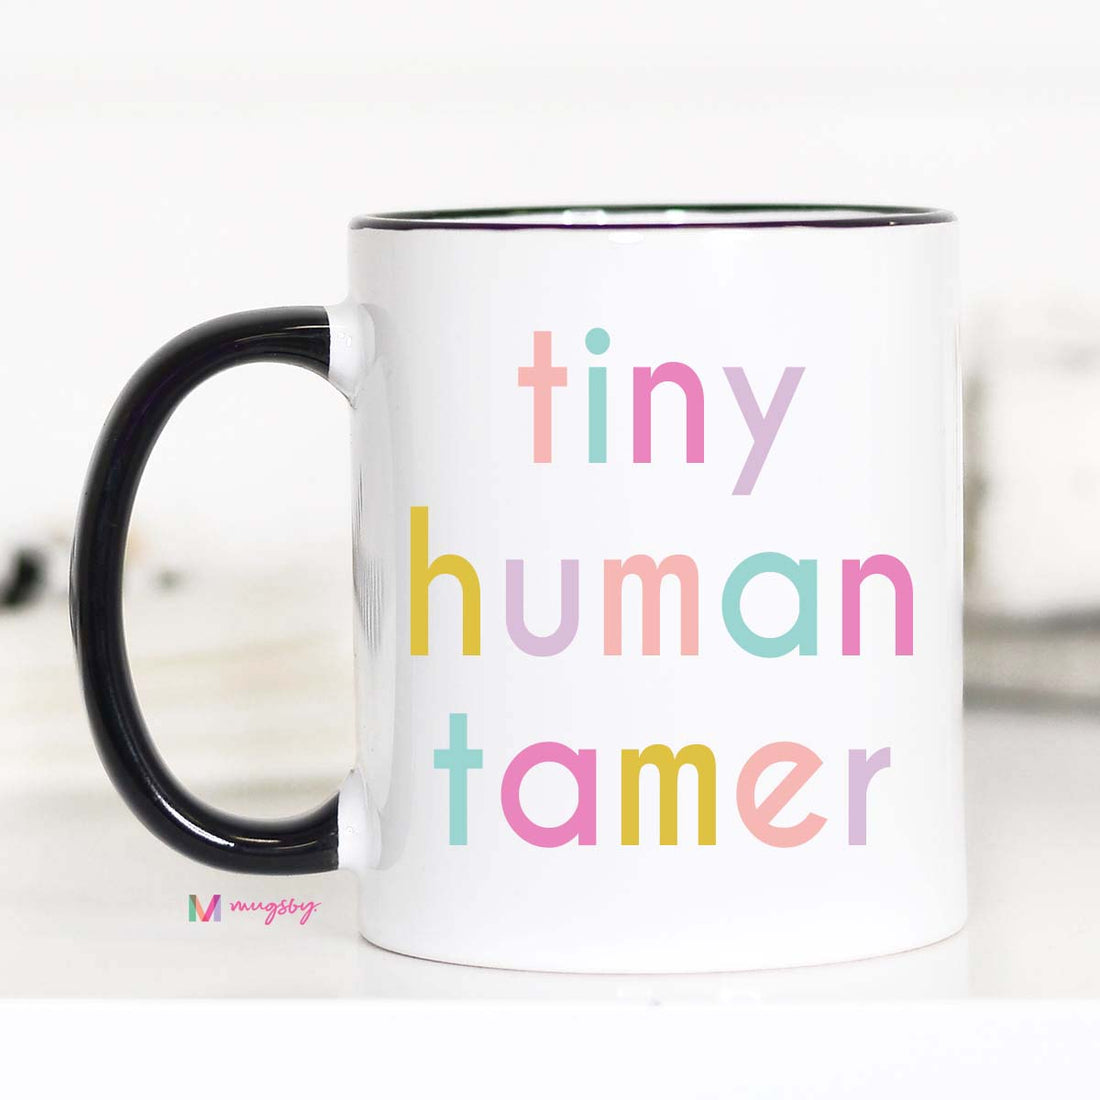 tiny human tamer mug